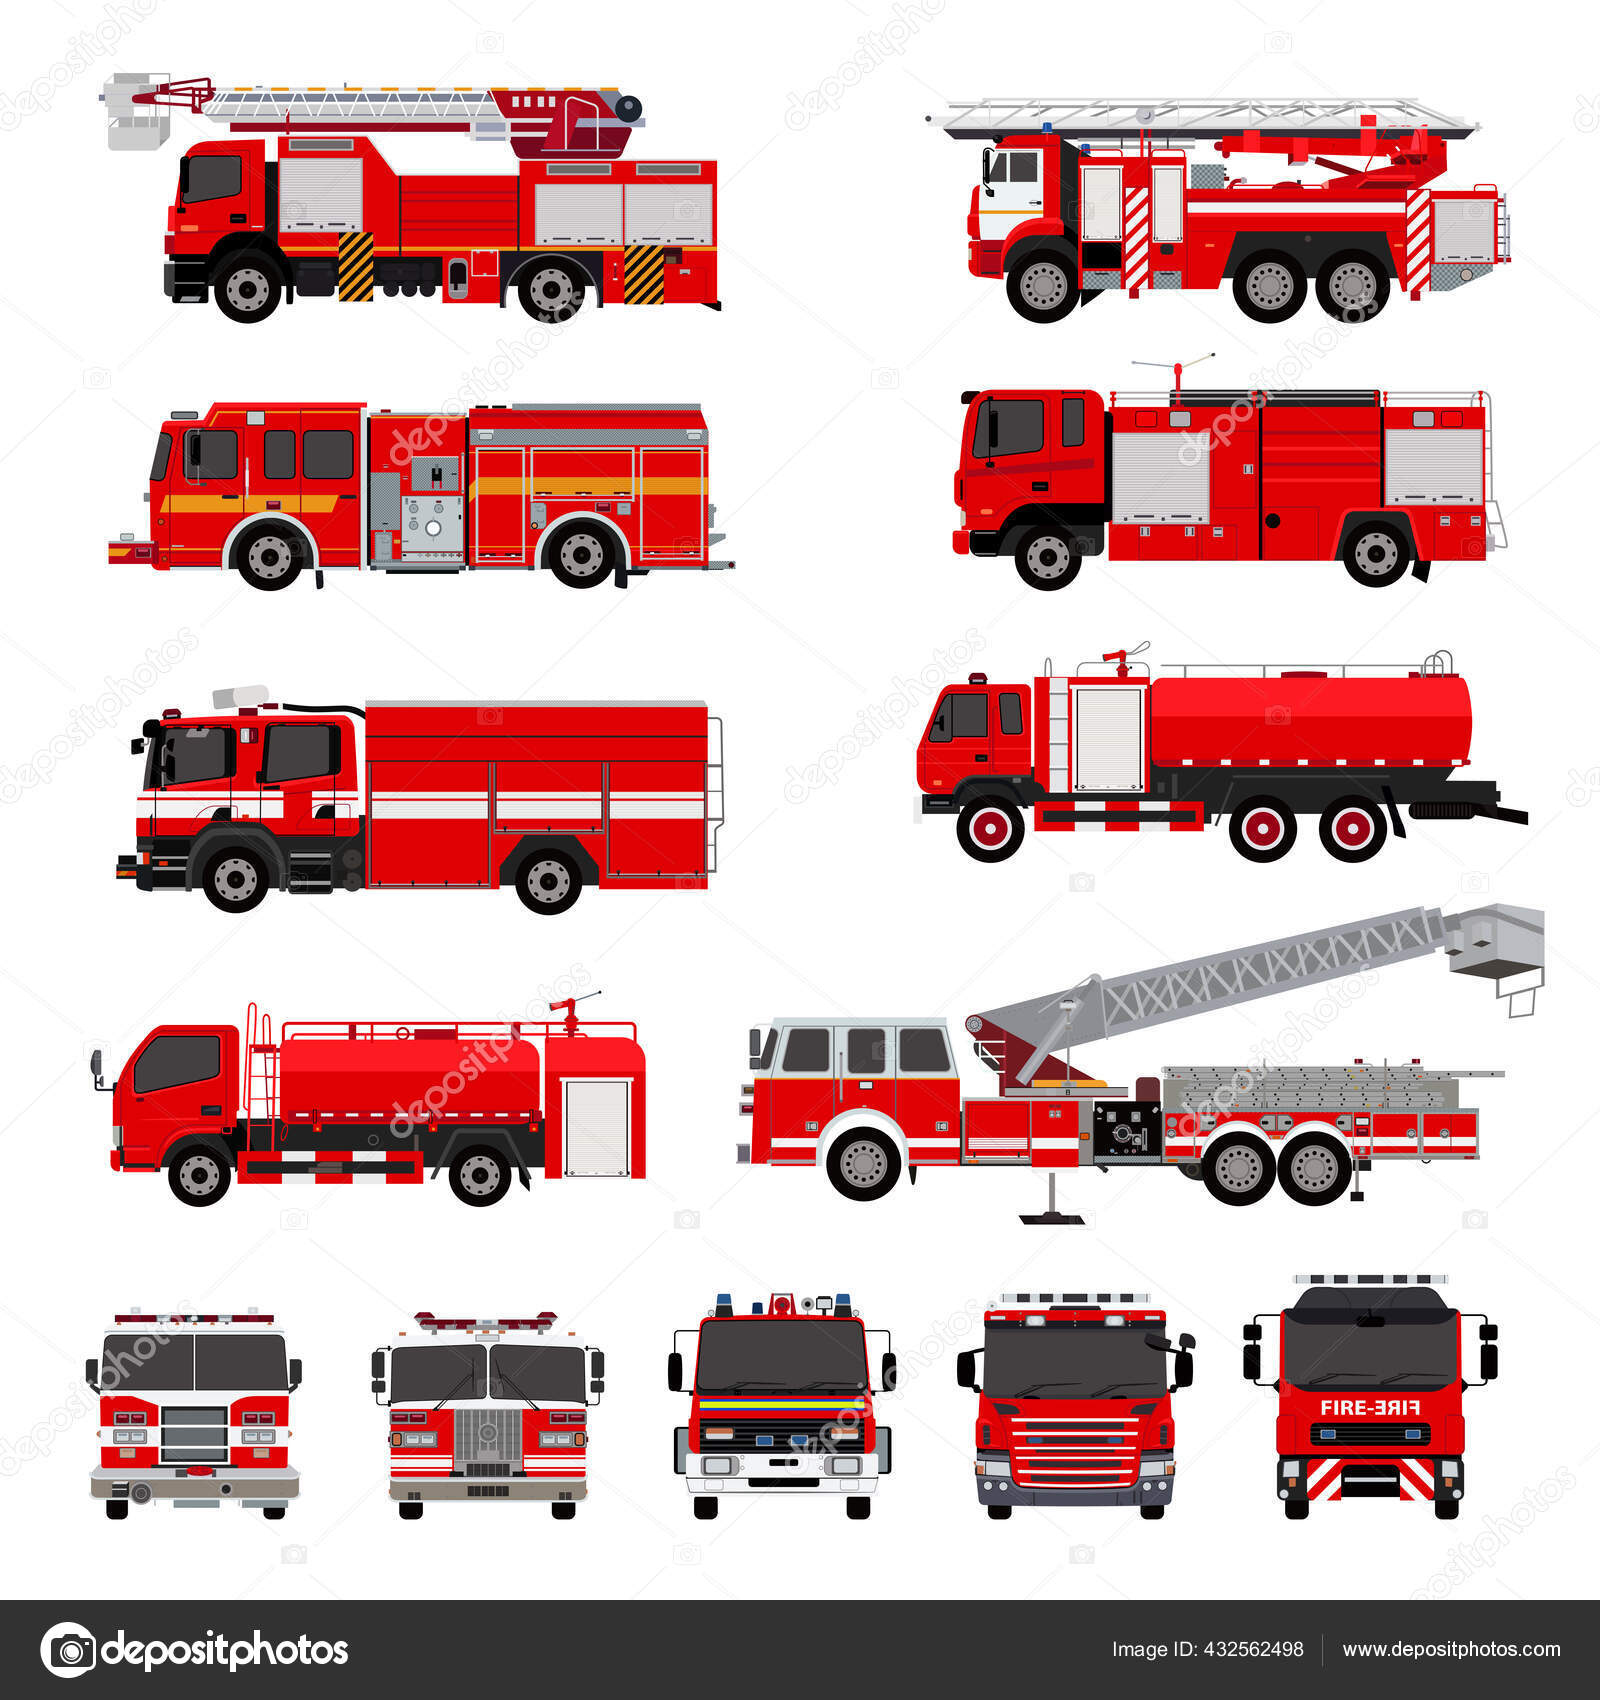 Company Two Fire 4x4 Rescue Trucks